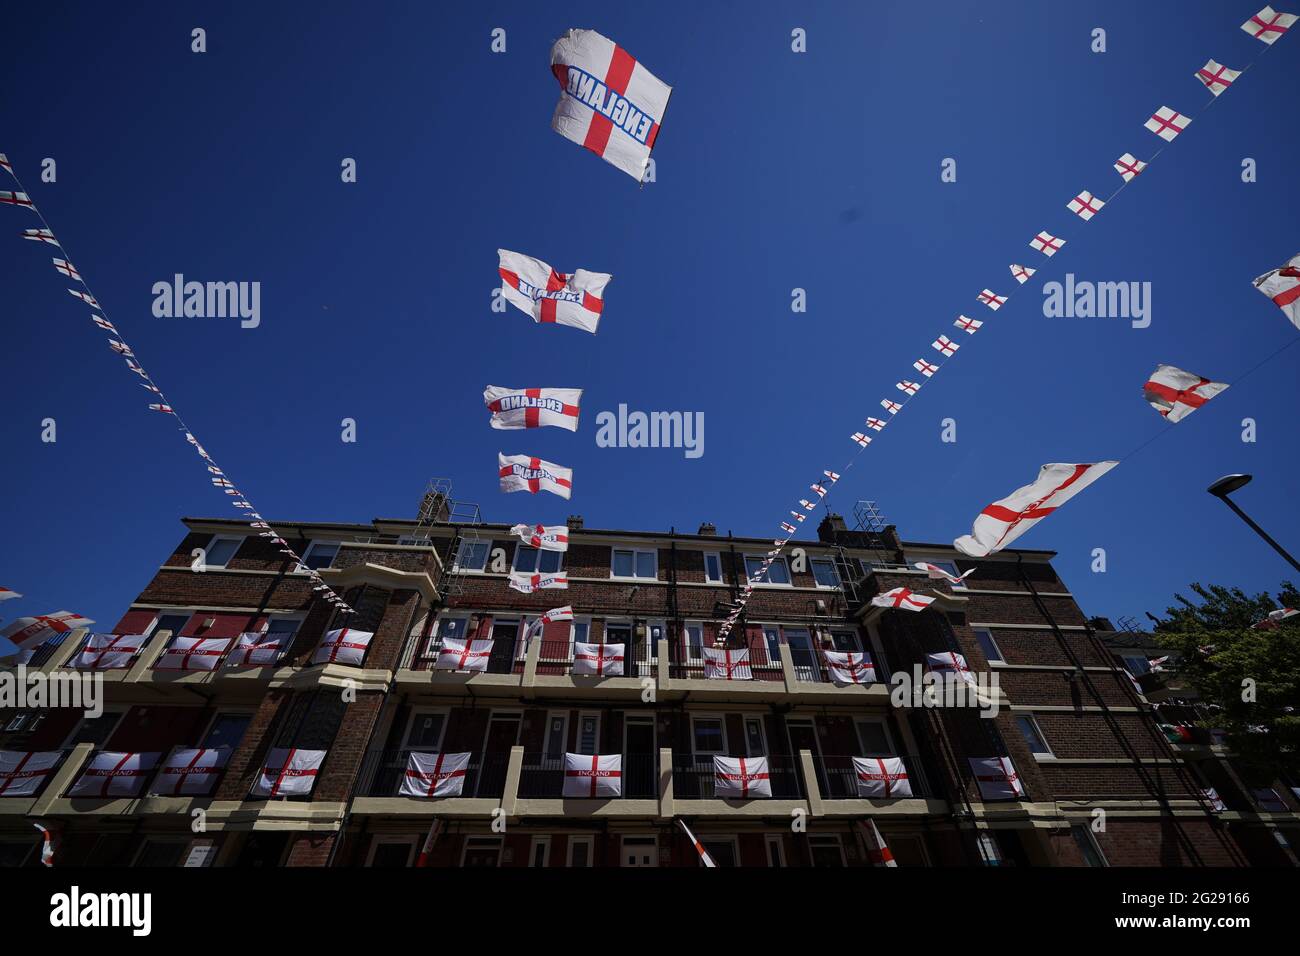 Le bandiere inglesi hanno messo in su sulla tenuta di Kirby a Bermondsey, Londra del sud, dove i residenti stanno mostrando il loro sostegno all'Inghilterra prima della partita della nazione di 2020 euro la domenica. Data immagine: Mercoledì 9 giugno 2021. Foto Stock